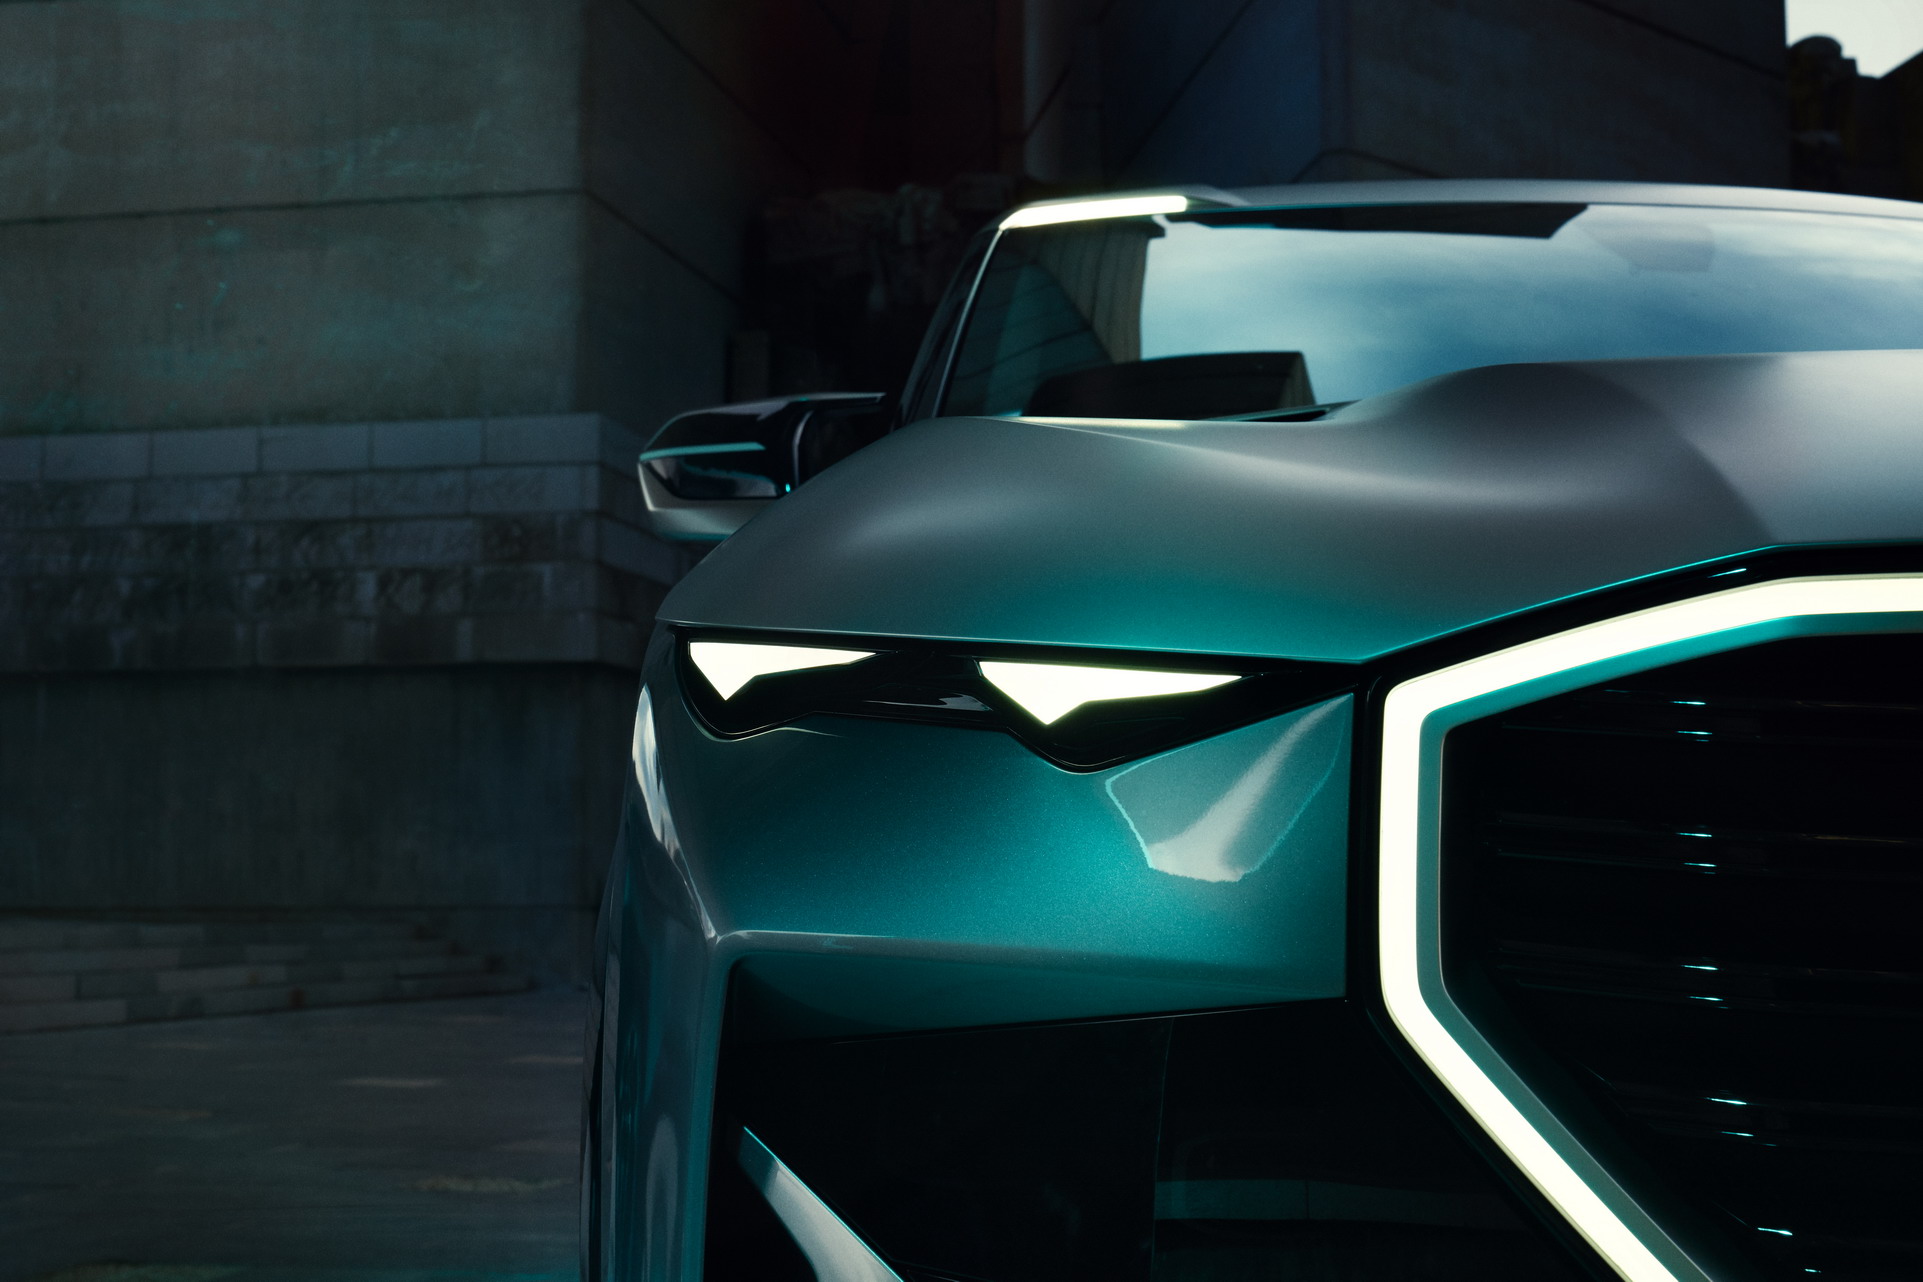 BMW Concept XM resim galerisi (30.11.2021)